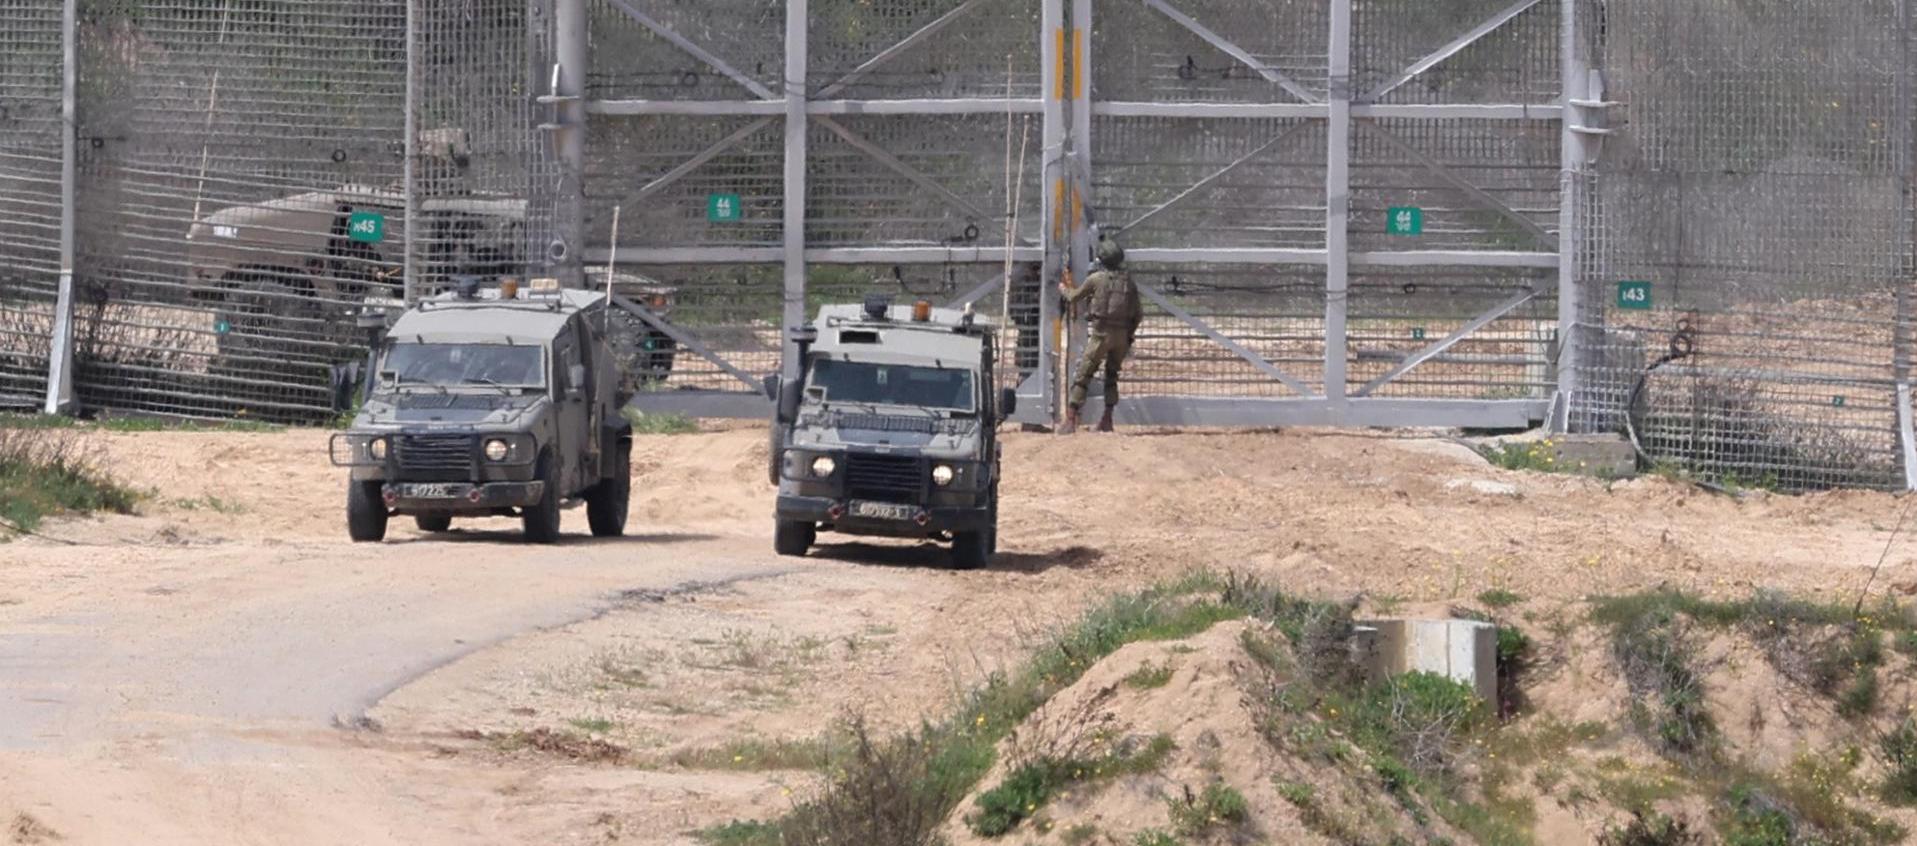 Imagen de archivo de soldados israelíes con vehículos militares en la valla fronteriza con la Franja de Gaza